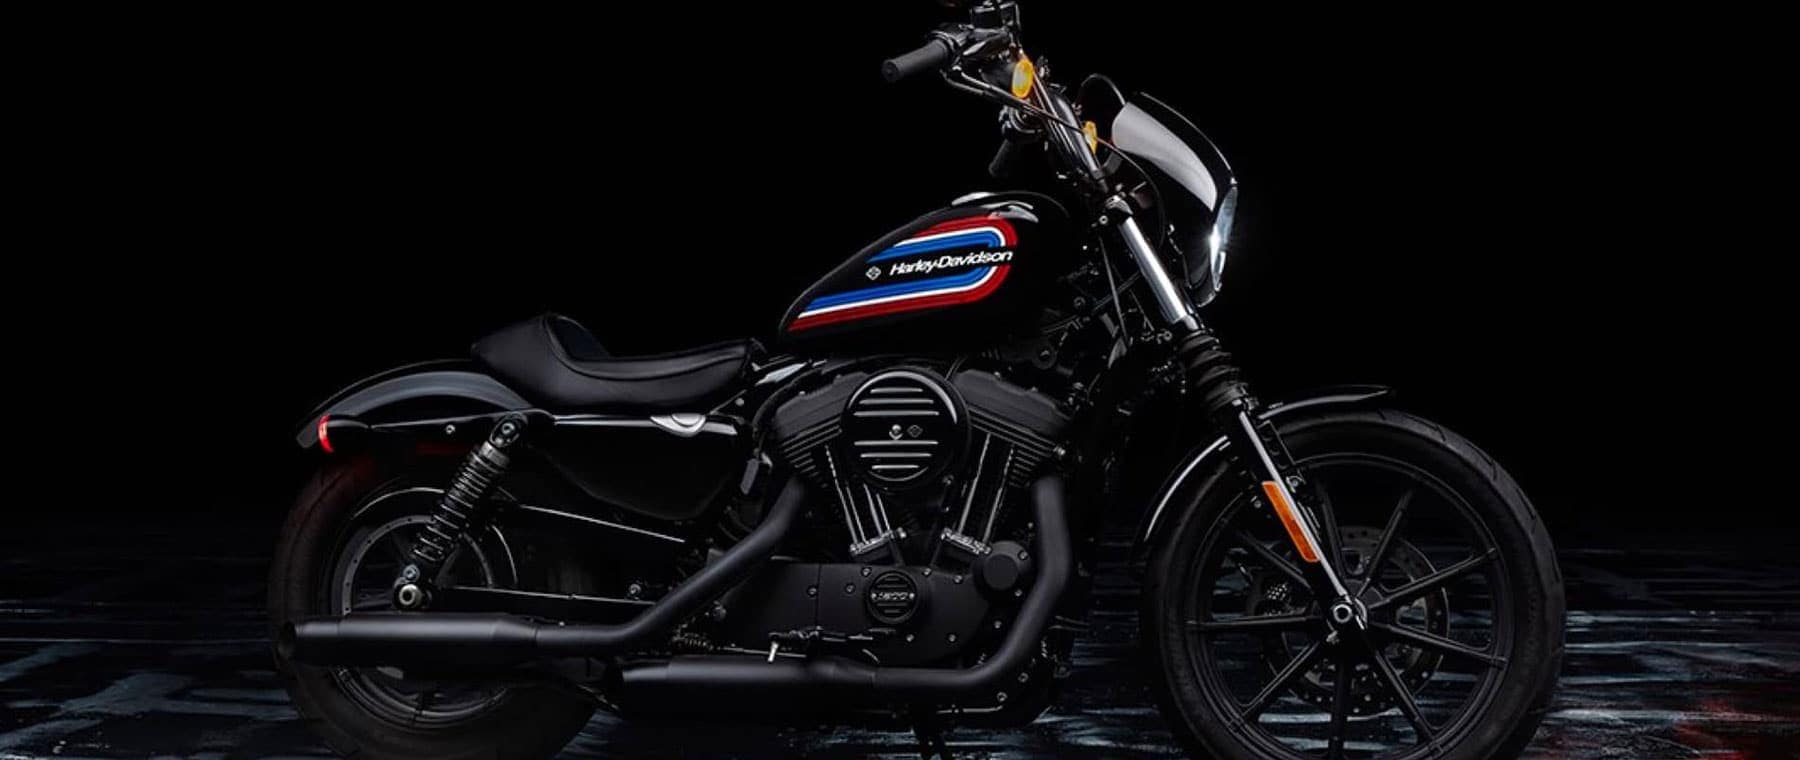 Detail Images Of Harley Davidson Bike Nomer 34